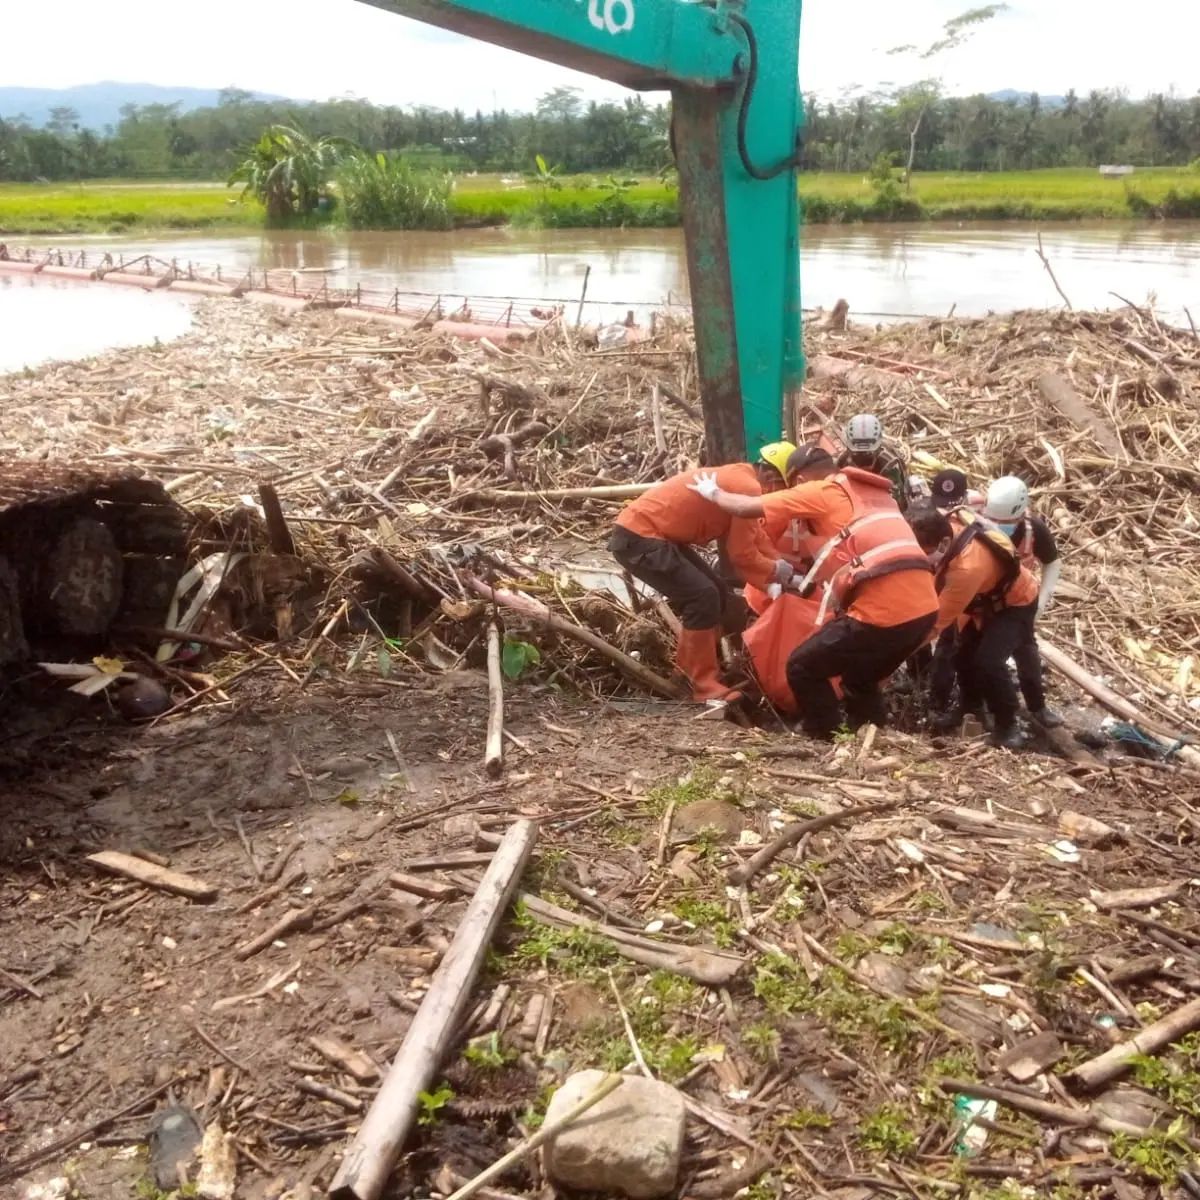  Geger, Penemuan Mayat di Waduk Mrica Banjarnegara 